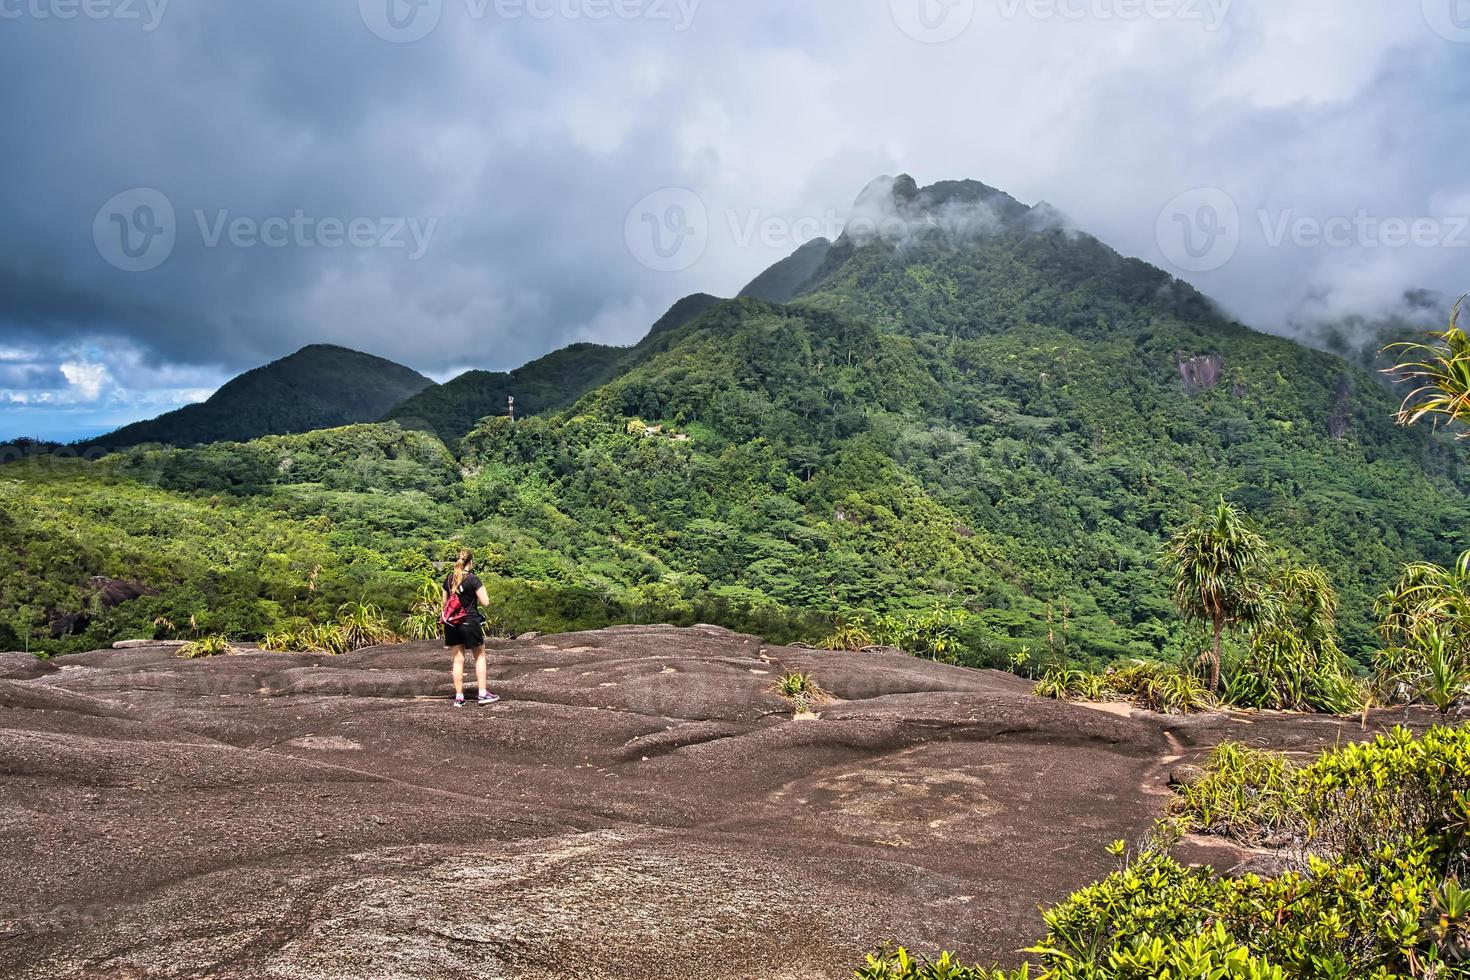 copolia pista giovane donna wating Seychelles massimo montagna, mattino seychelles mahe Seychelles foto